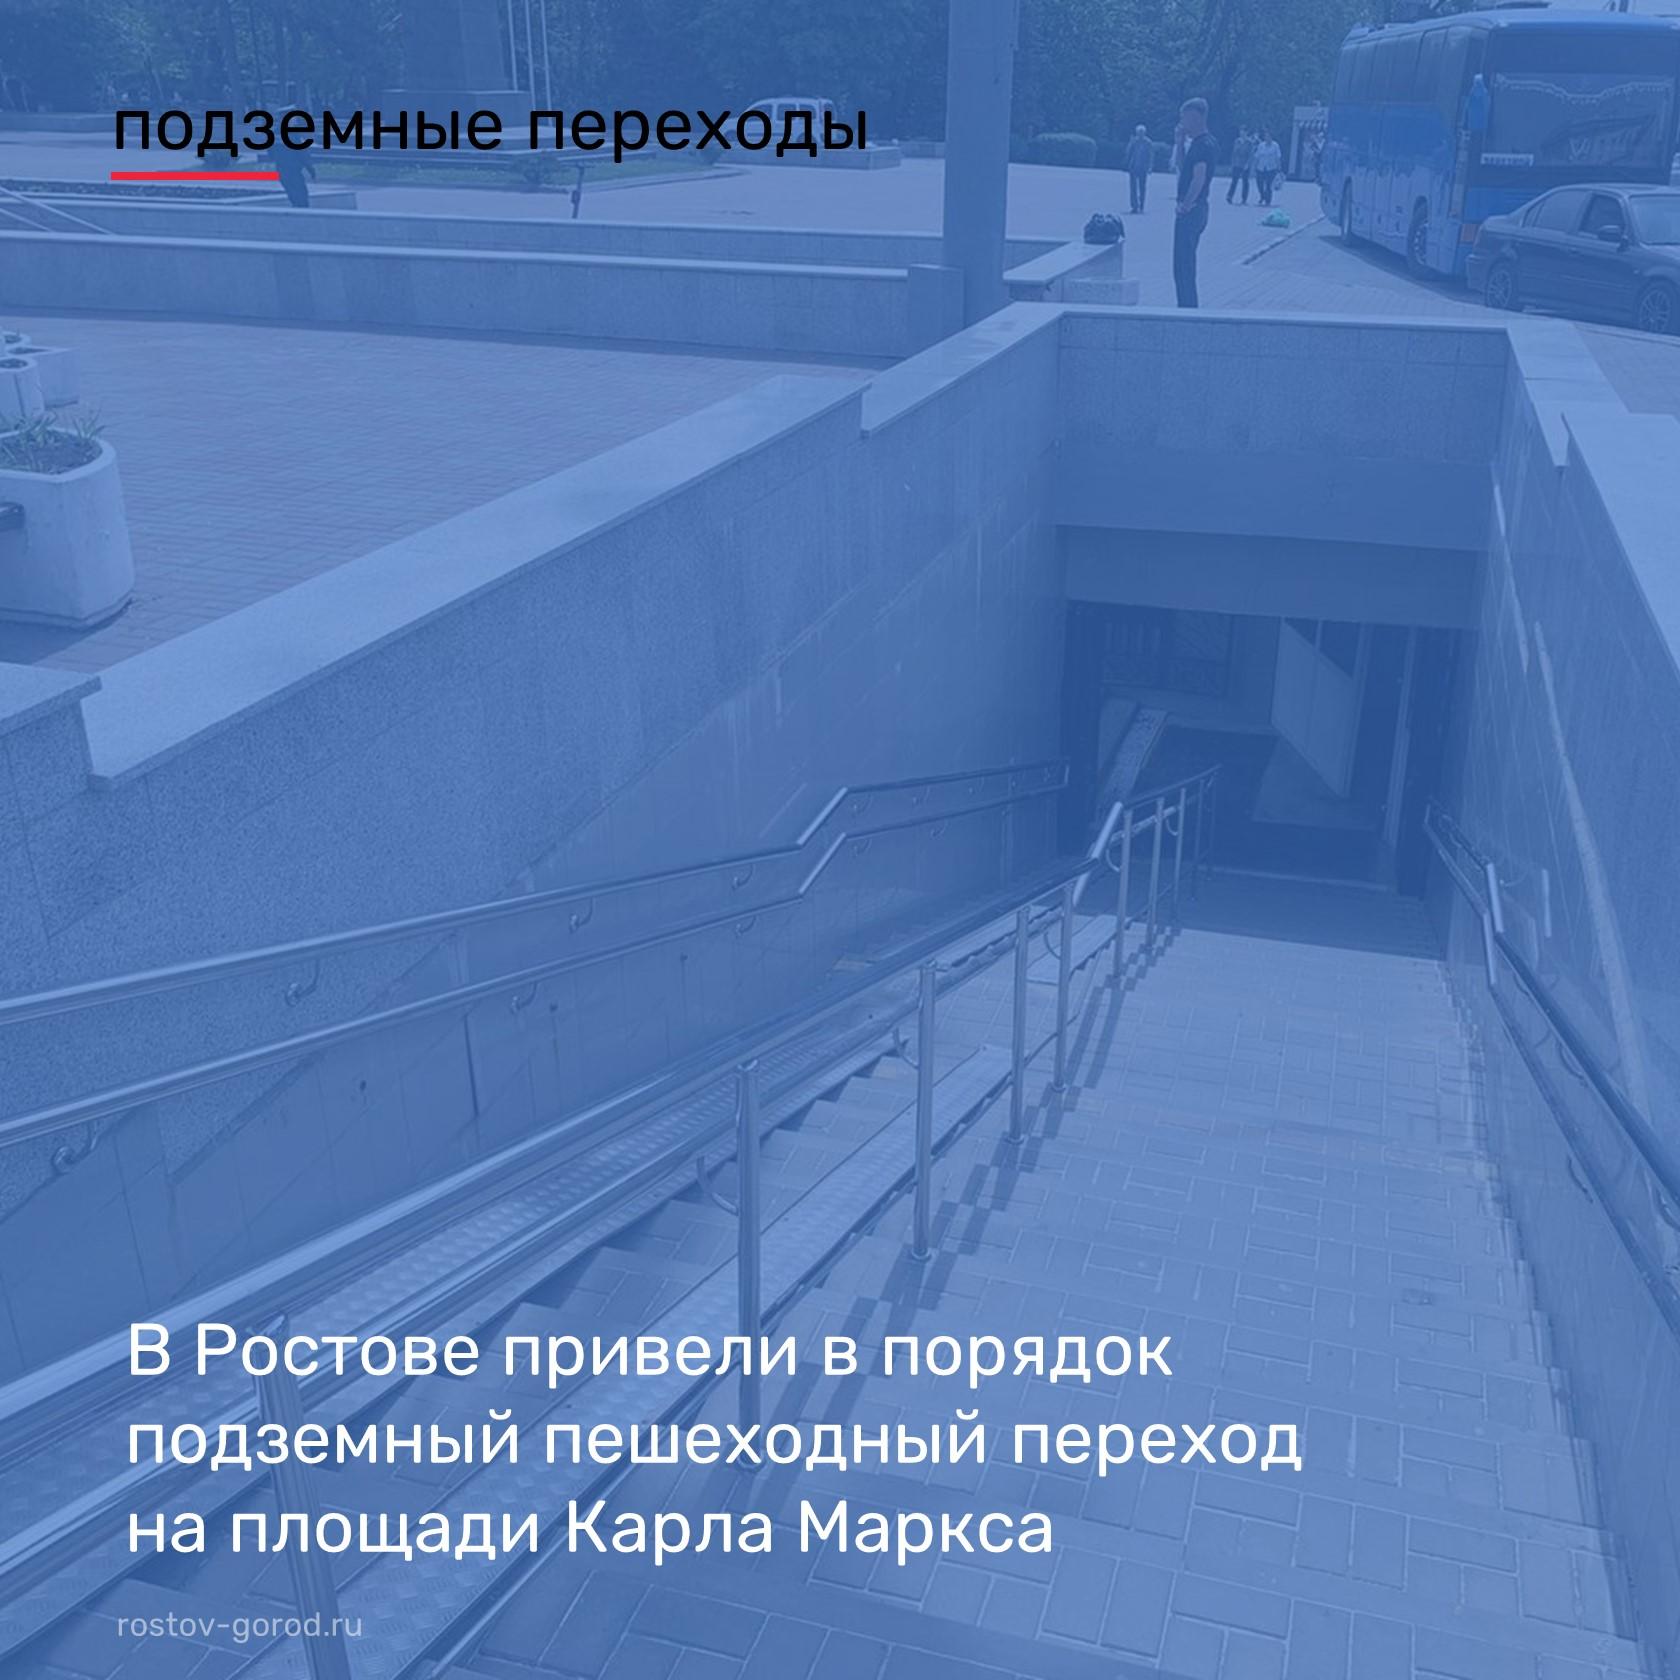 В подземном переходе Ростова демонтировали торговые павильоны